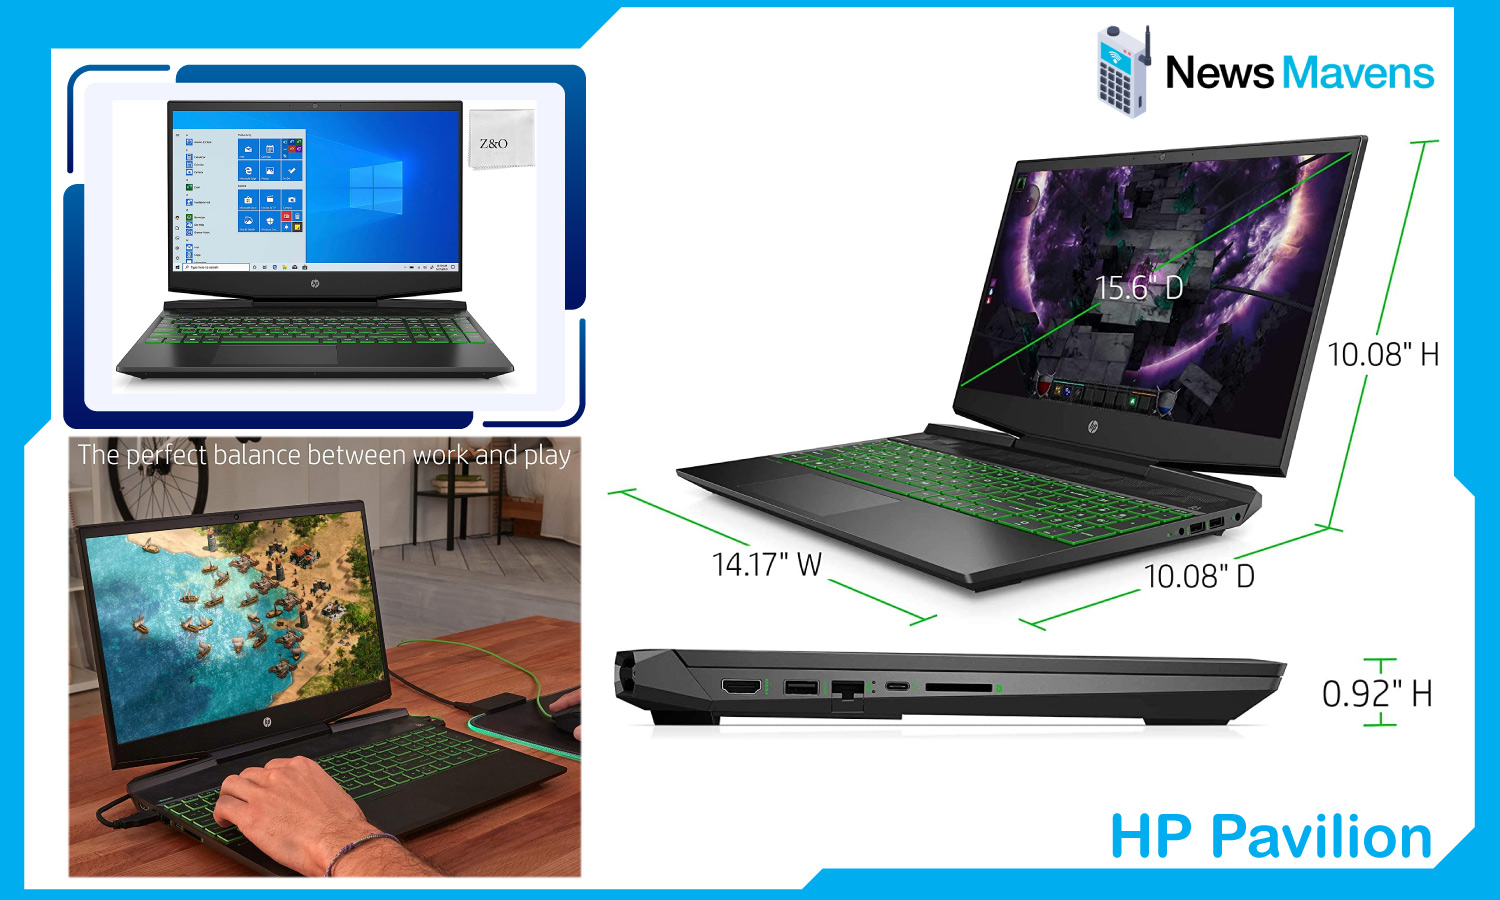 HP Pavilion 15.6” Gaming Laptop